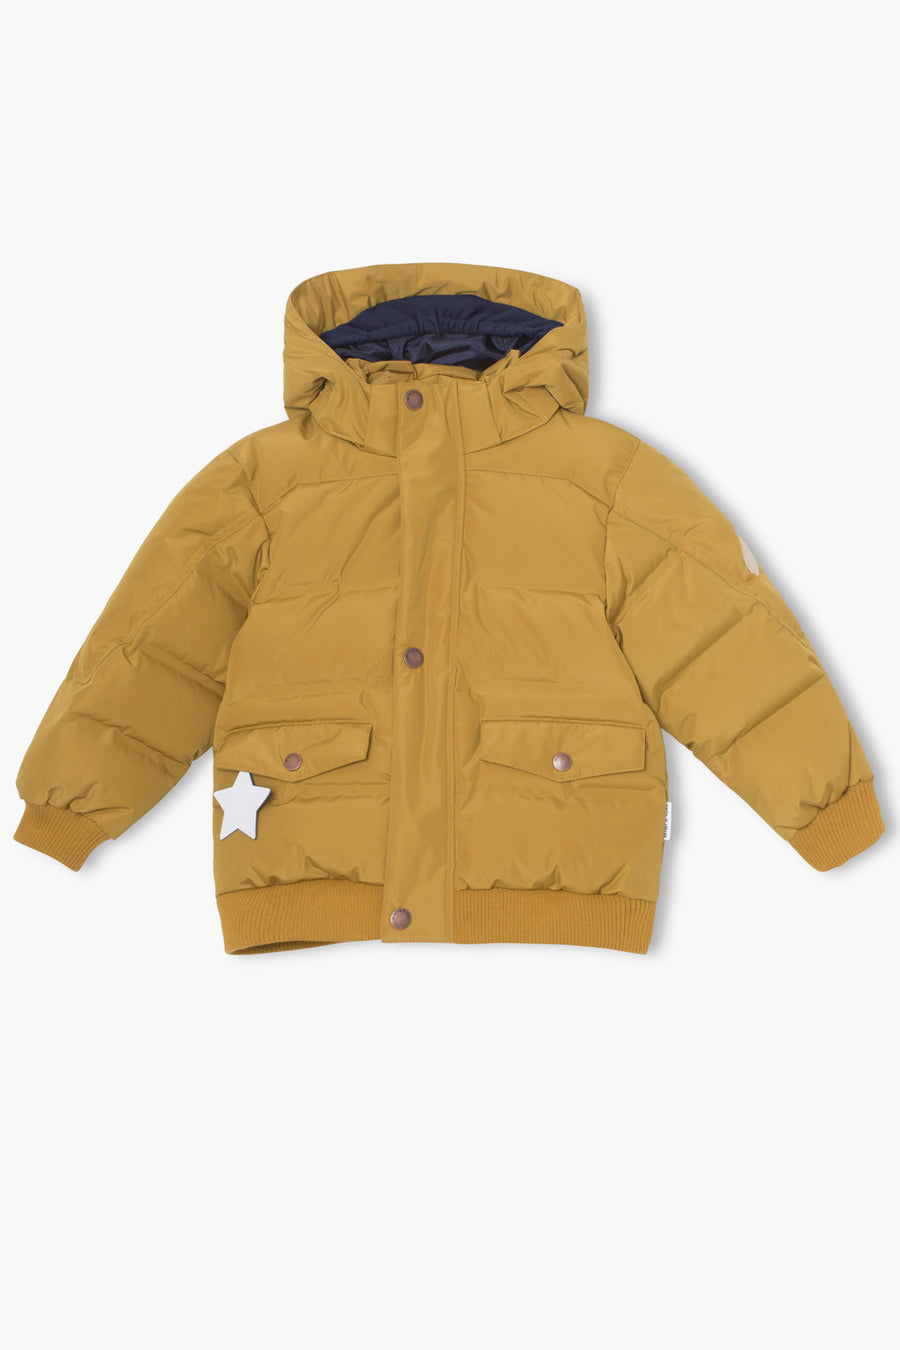 Boys Jackets, Coats, Rain Jackets & Outerwear | Mini Ruby